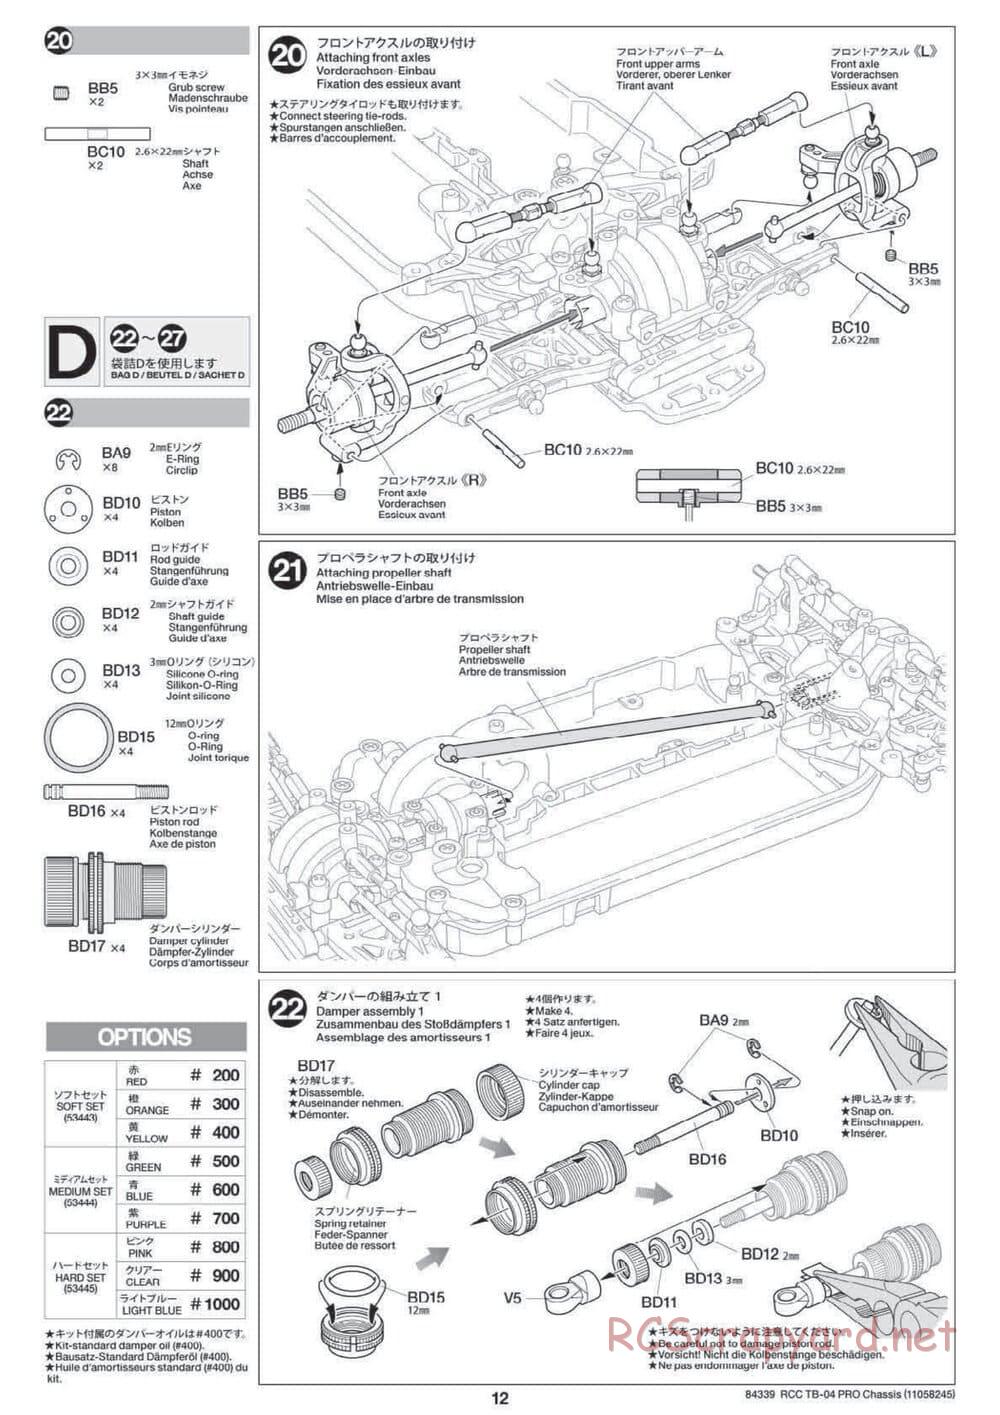 Tamiya - TB-04 Pro Chassis - Manual - Page 12